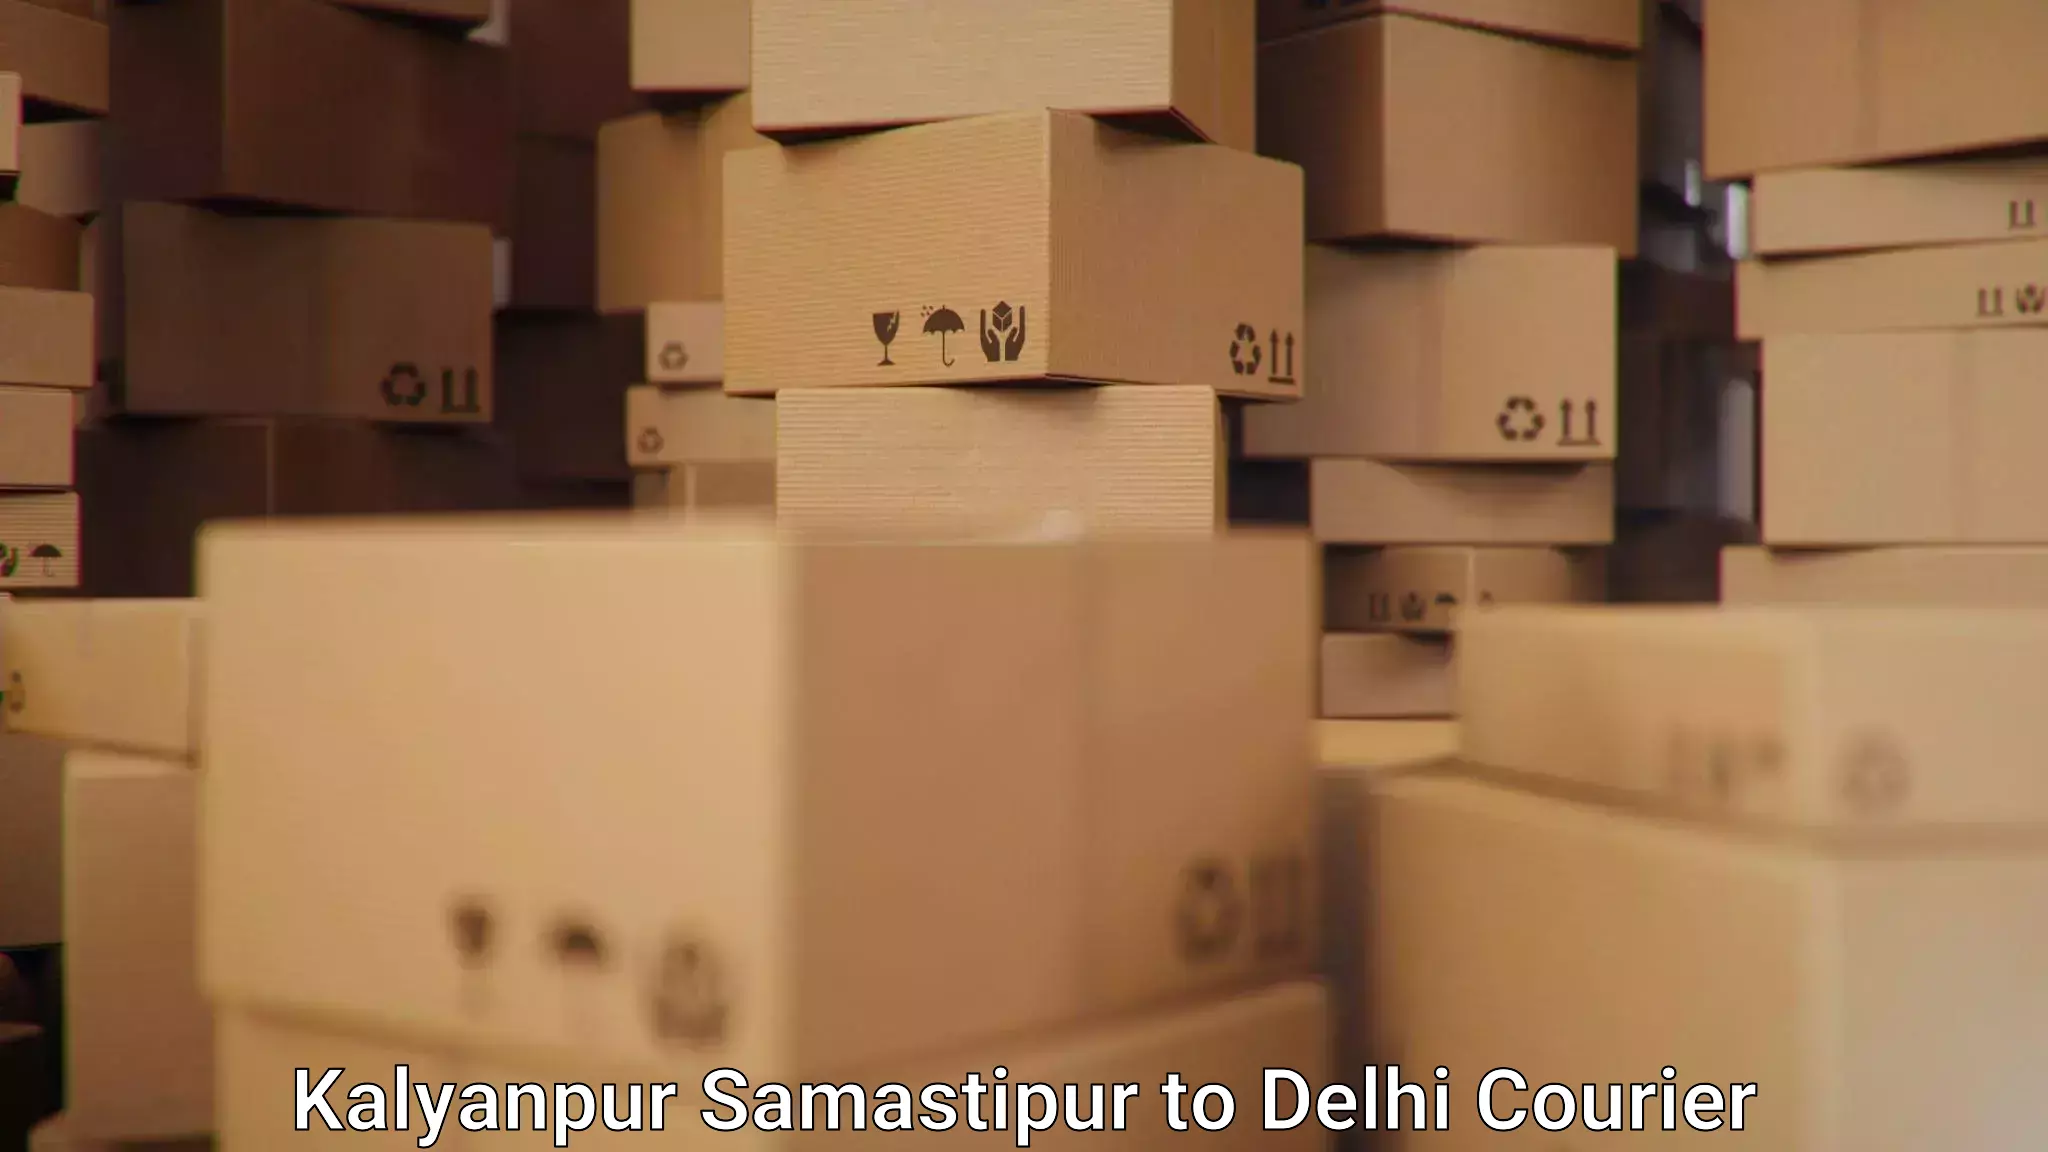 24/7 courier service Kalyanpur Samastipur to Jawaharlal Nehru University New Delhi